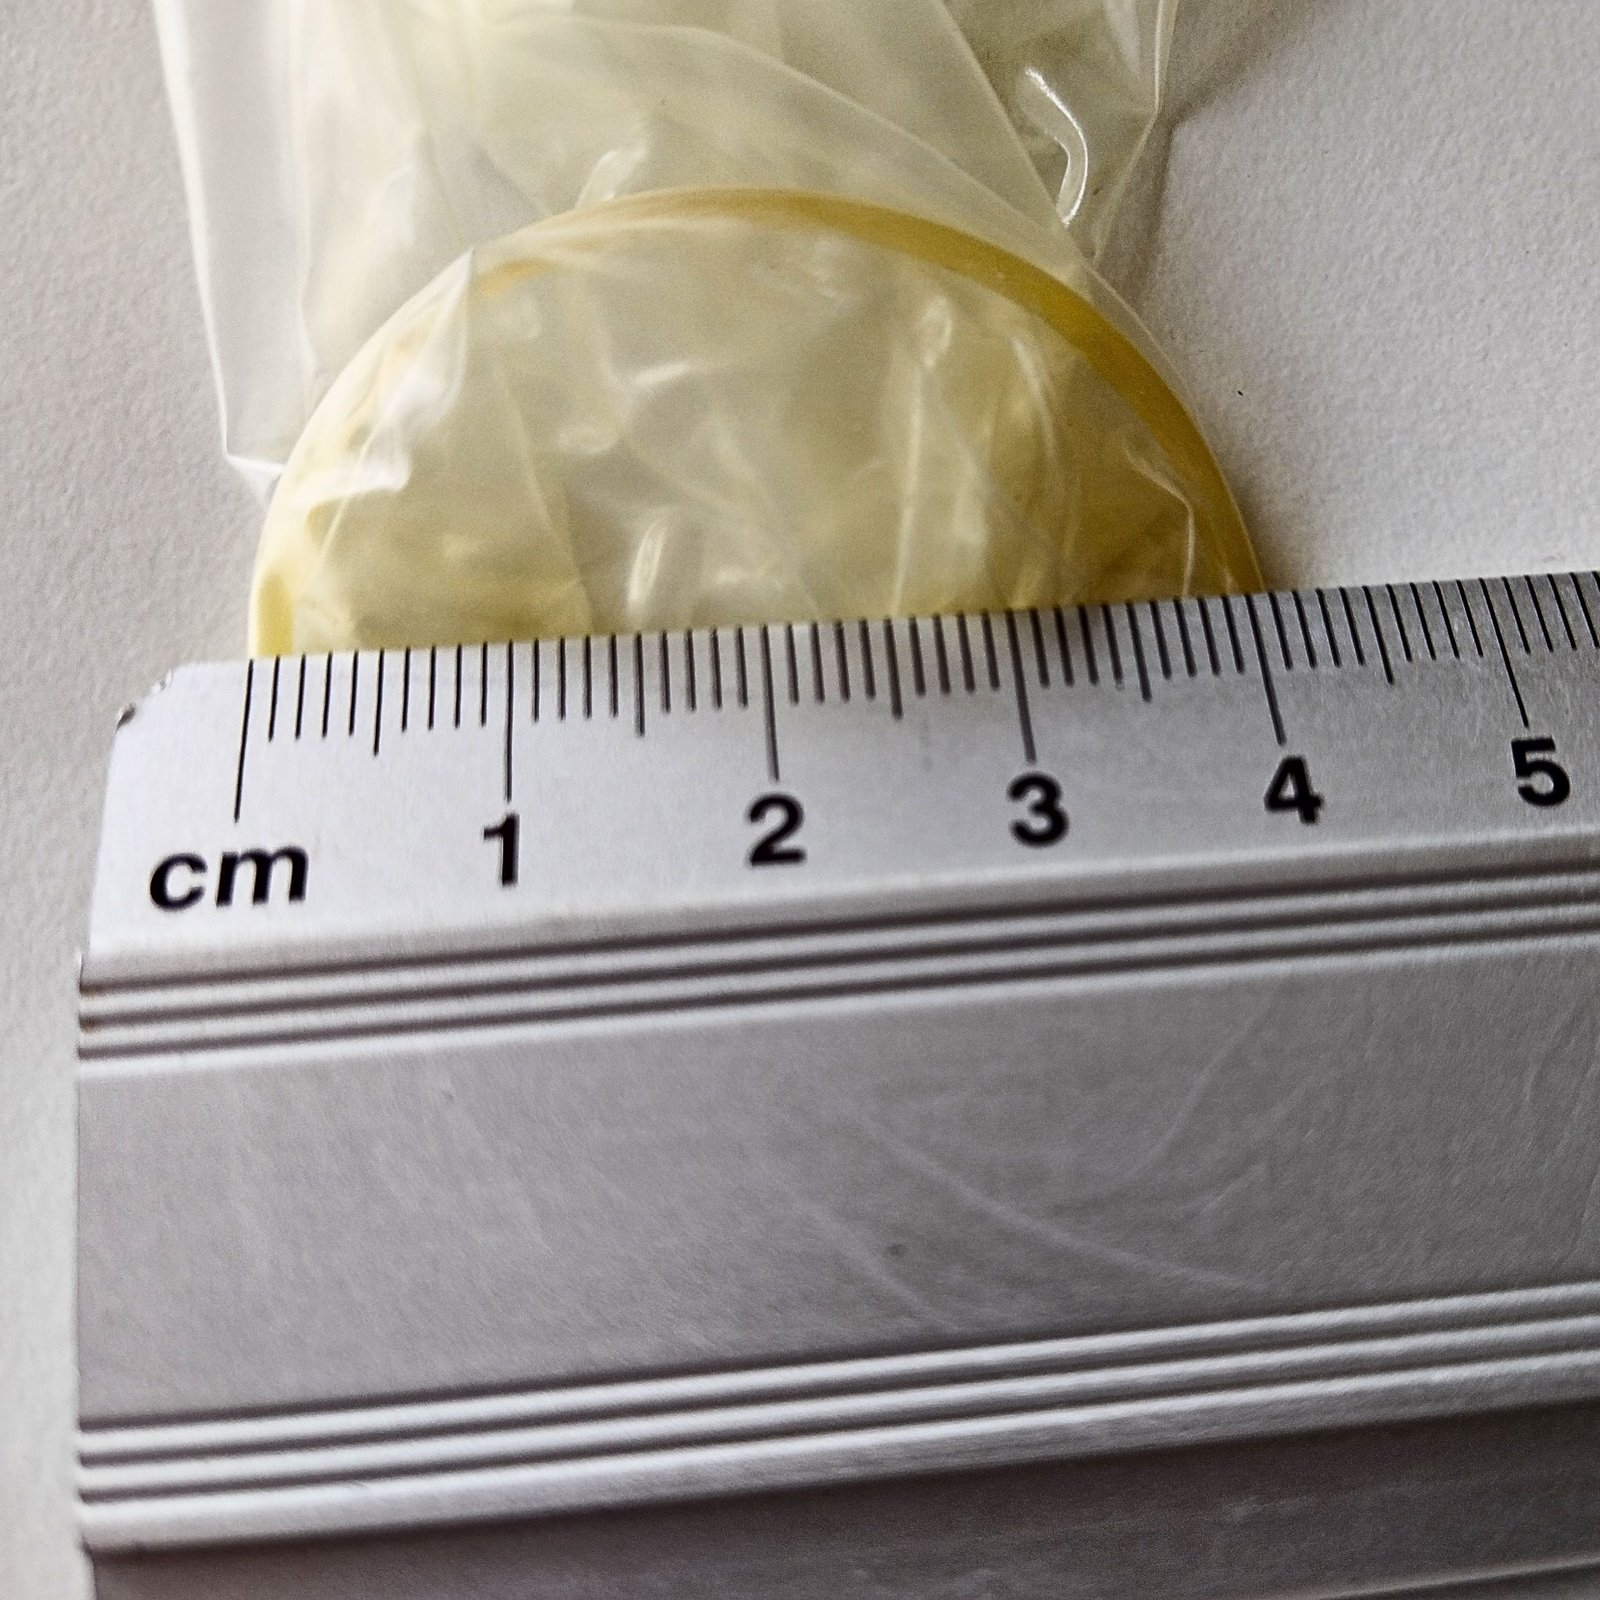 De diameter van een condoom meten